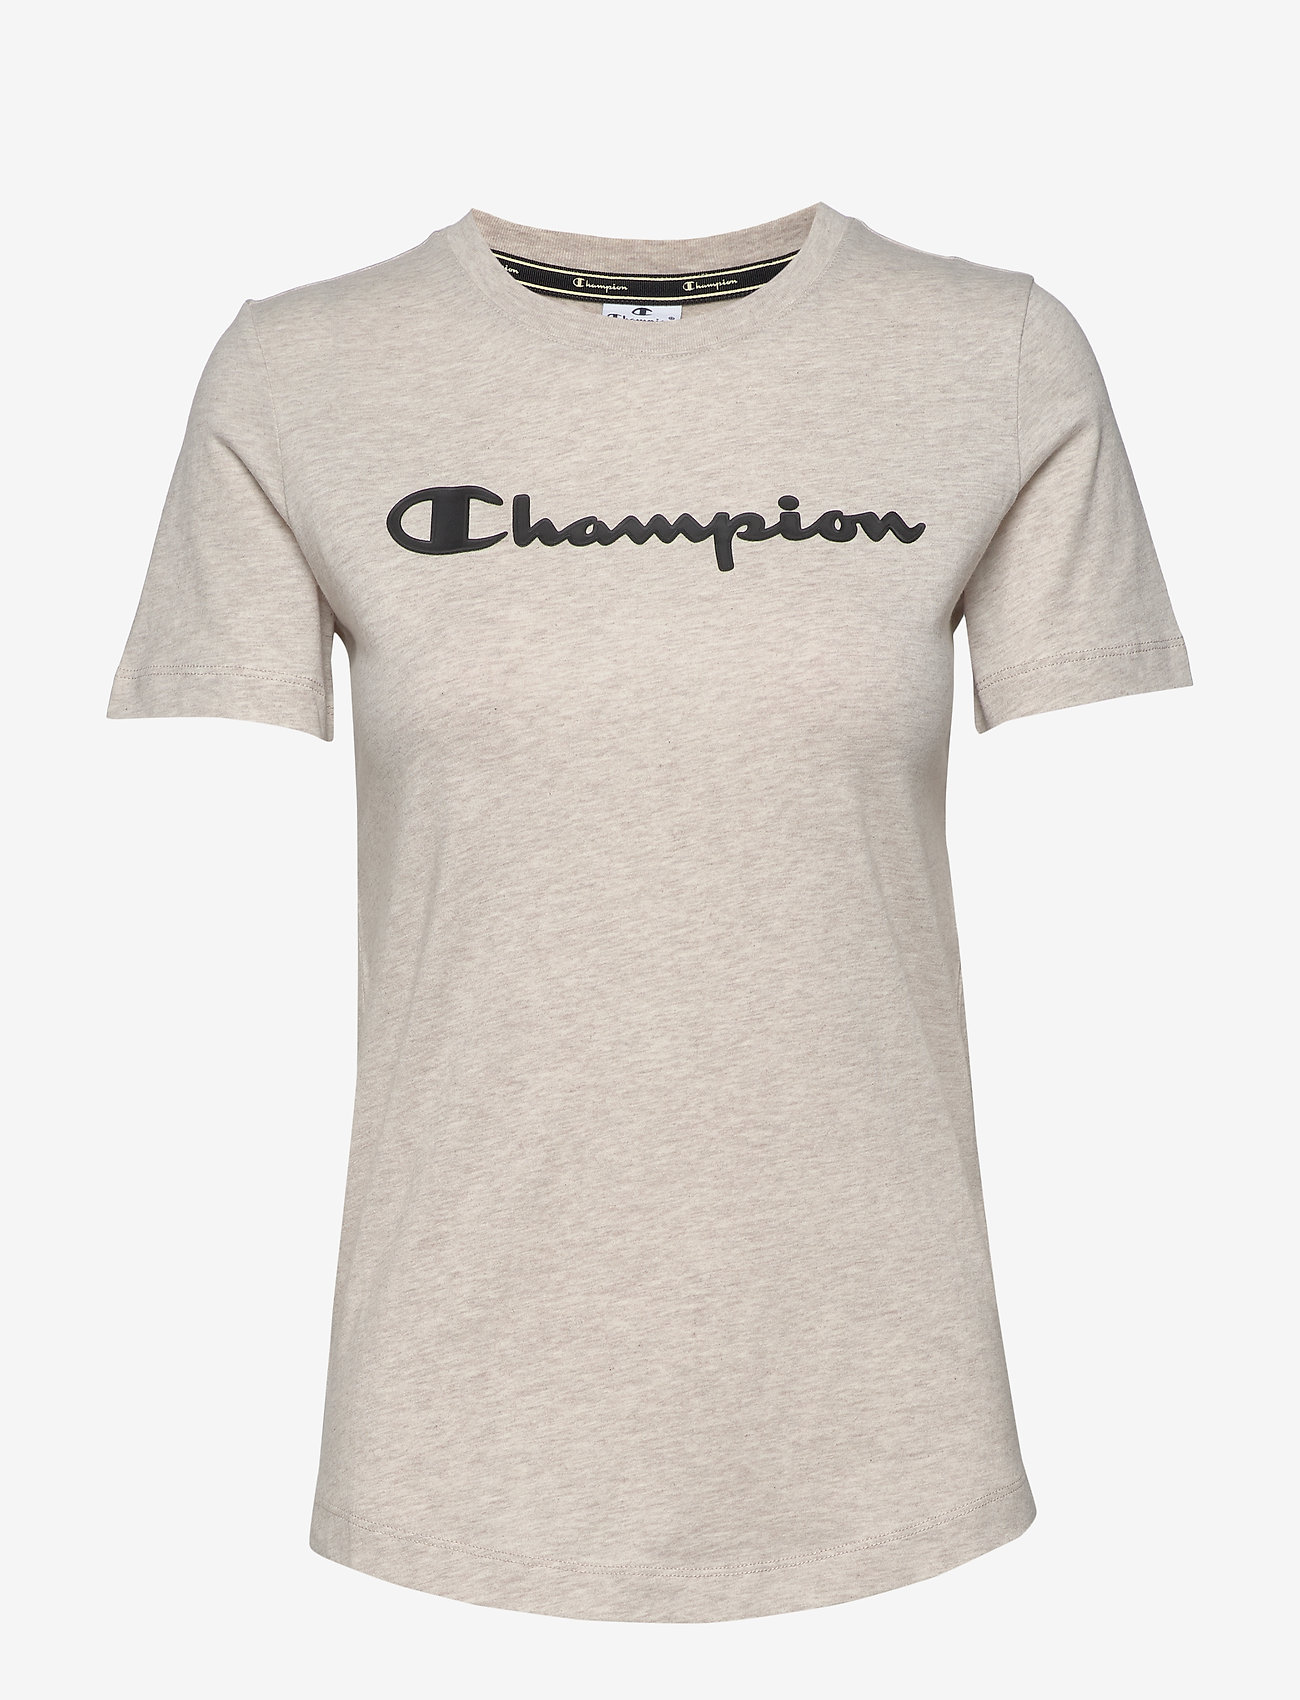 beige champion t shirt